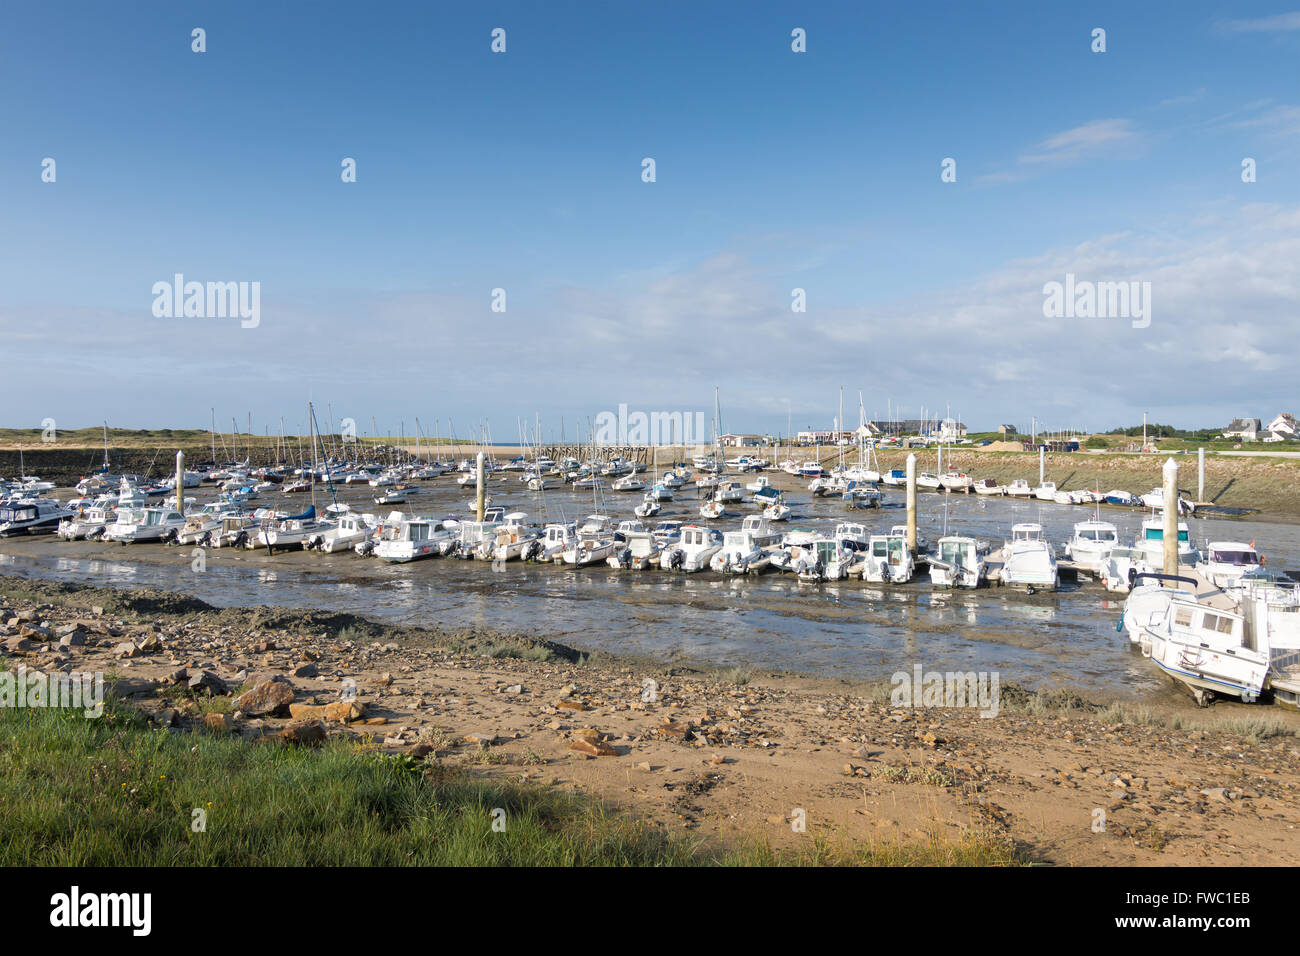 Le Port de Portbail en Normandie en France, avec des bateaux de marée Banque D'Images